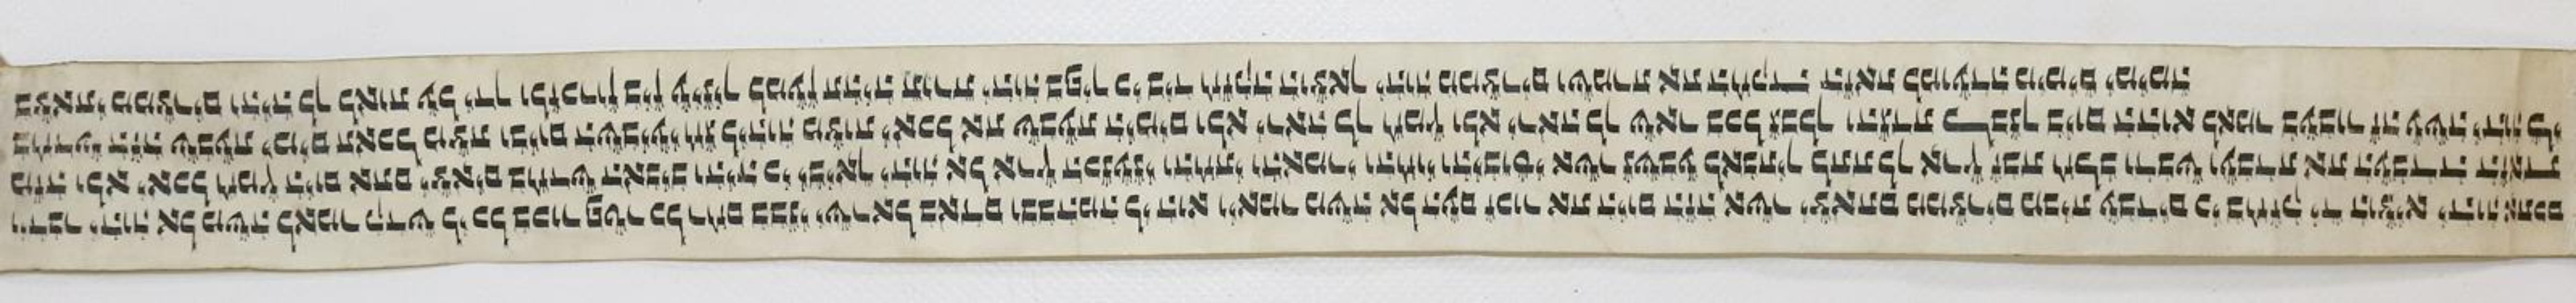 Hebräische Handschrift. | Bild Nr.1